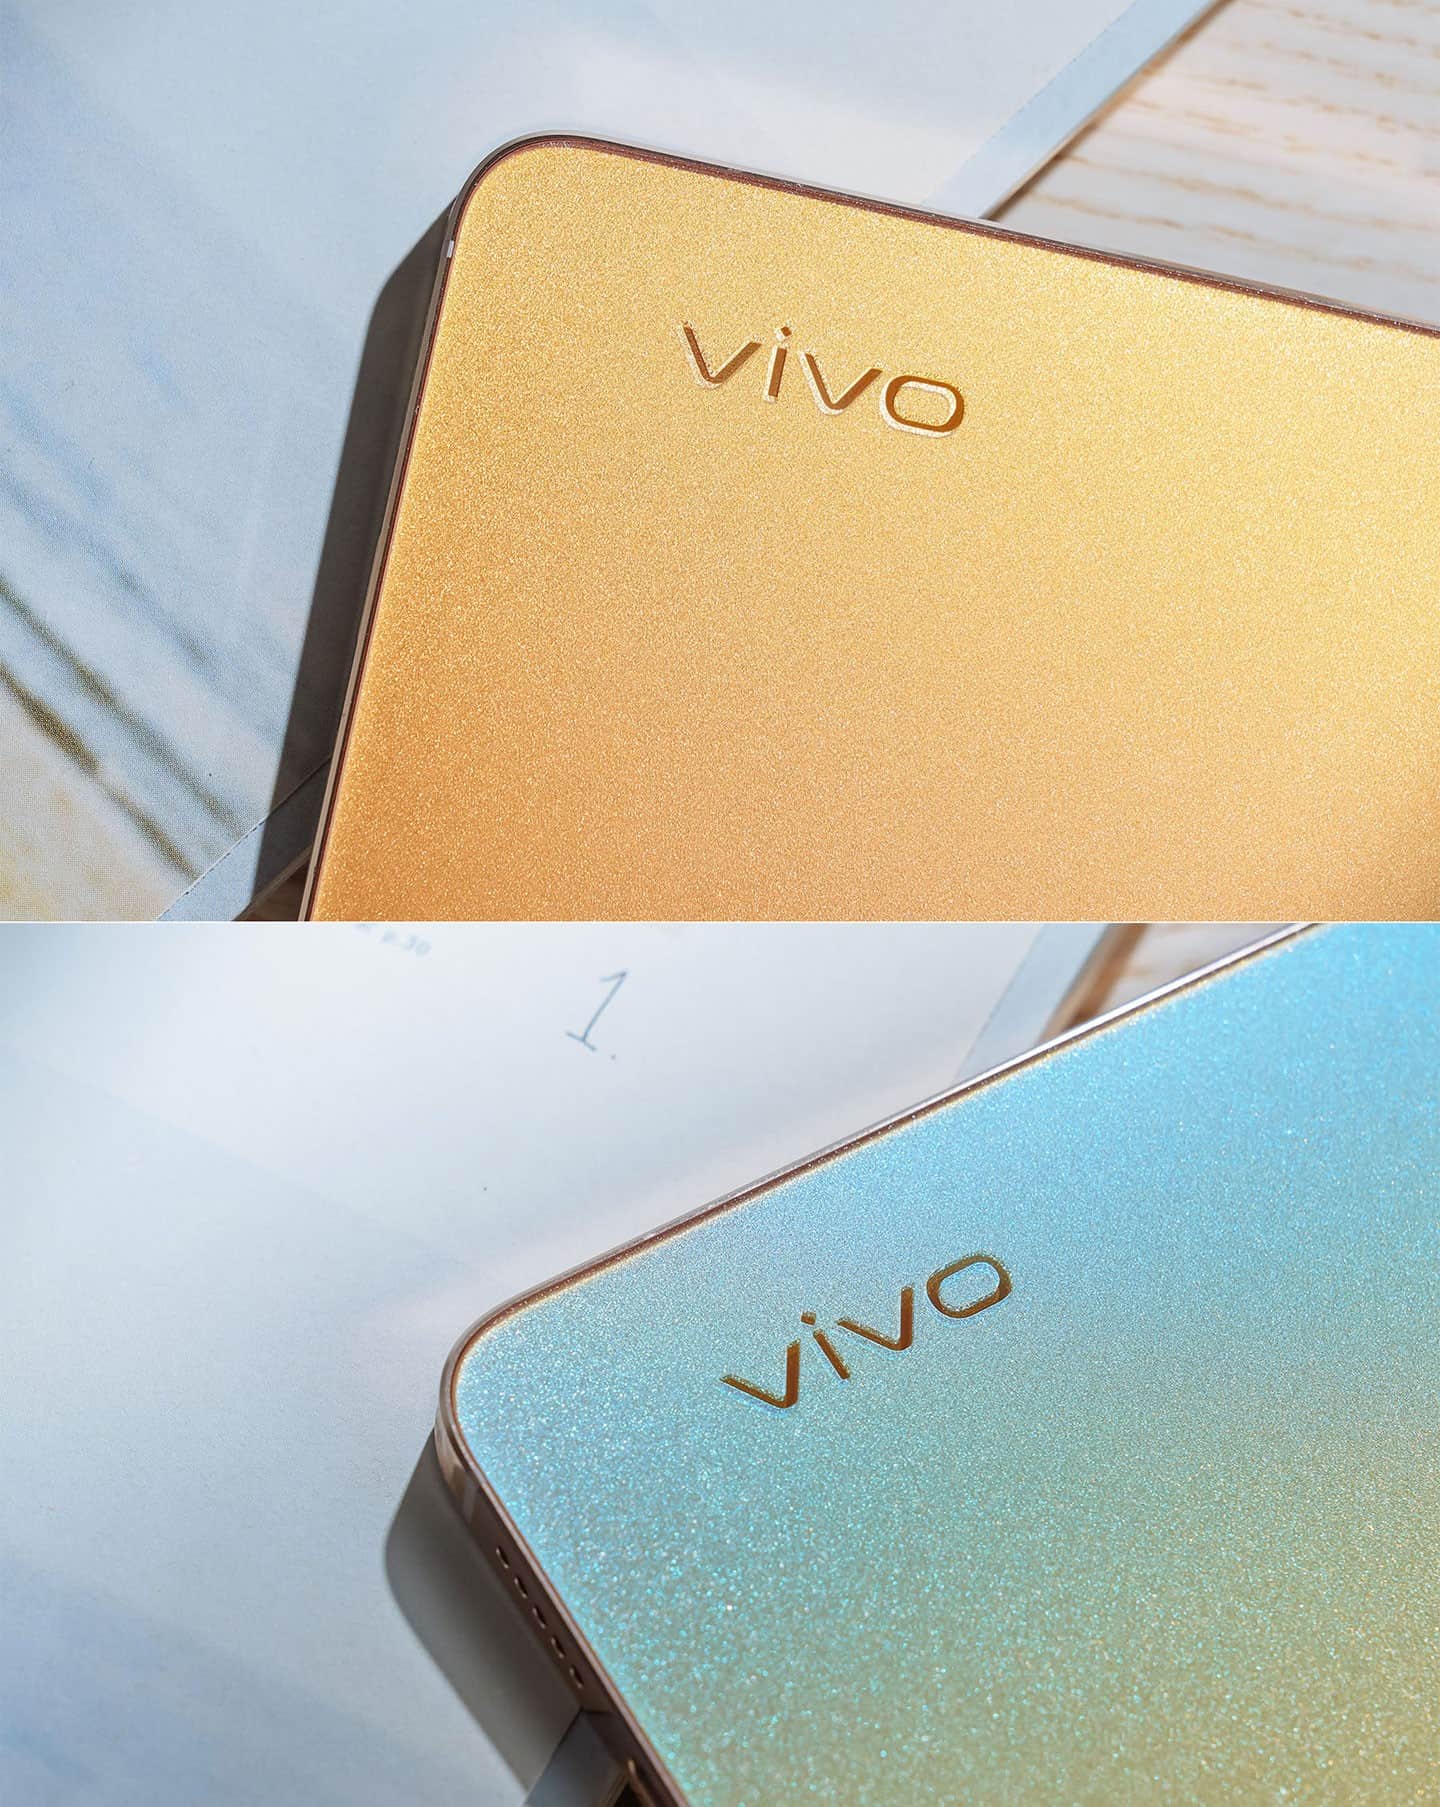 vivo V23 5G 的背蓋以 Fluorite AG 螢石玻璃磨砂工藝打造，視覺上猶如水晶般閃耀，而流光金版本更擁有特殊的「光致變色」效果，圖上為原本的金色背蓋色，圖下則為照射過紫外線後的變色效果。